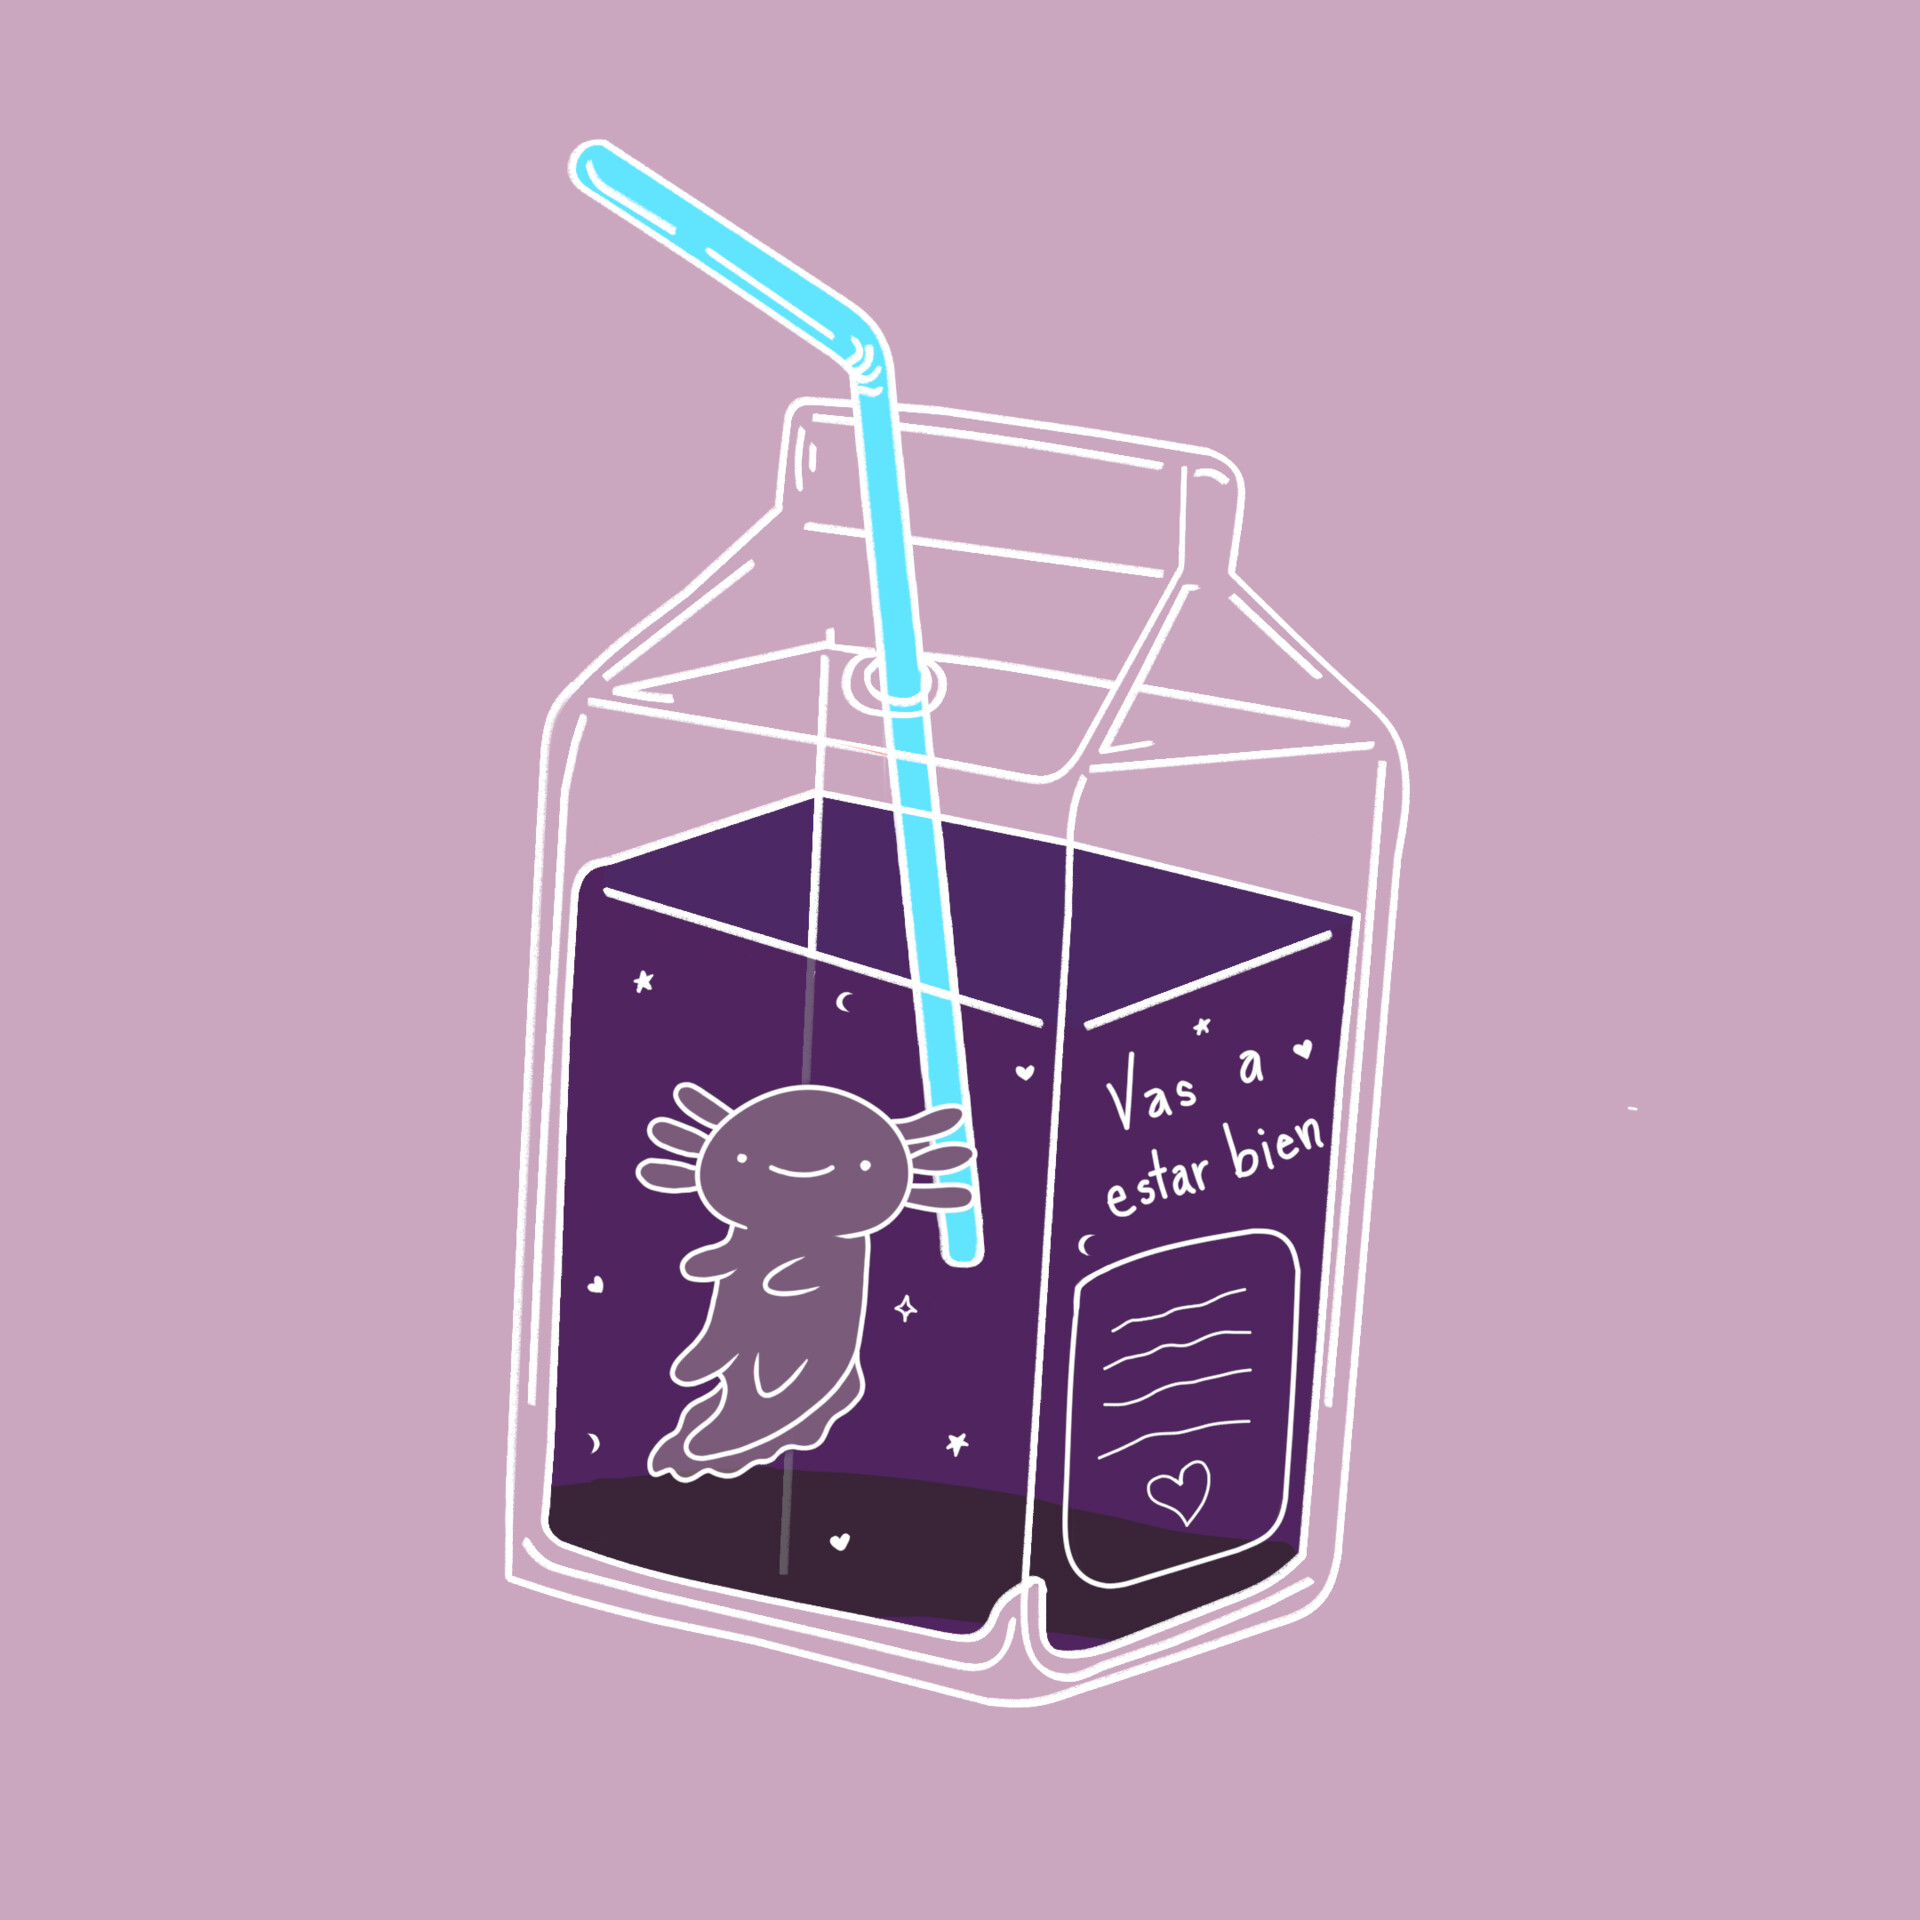 ArtStation - Juicy axolotl